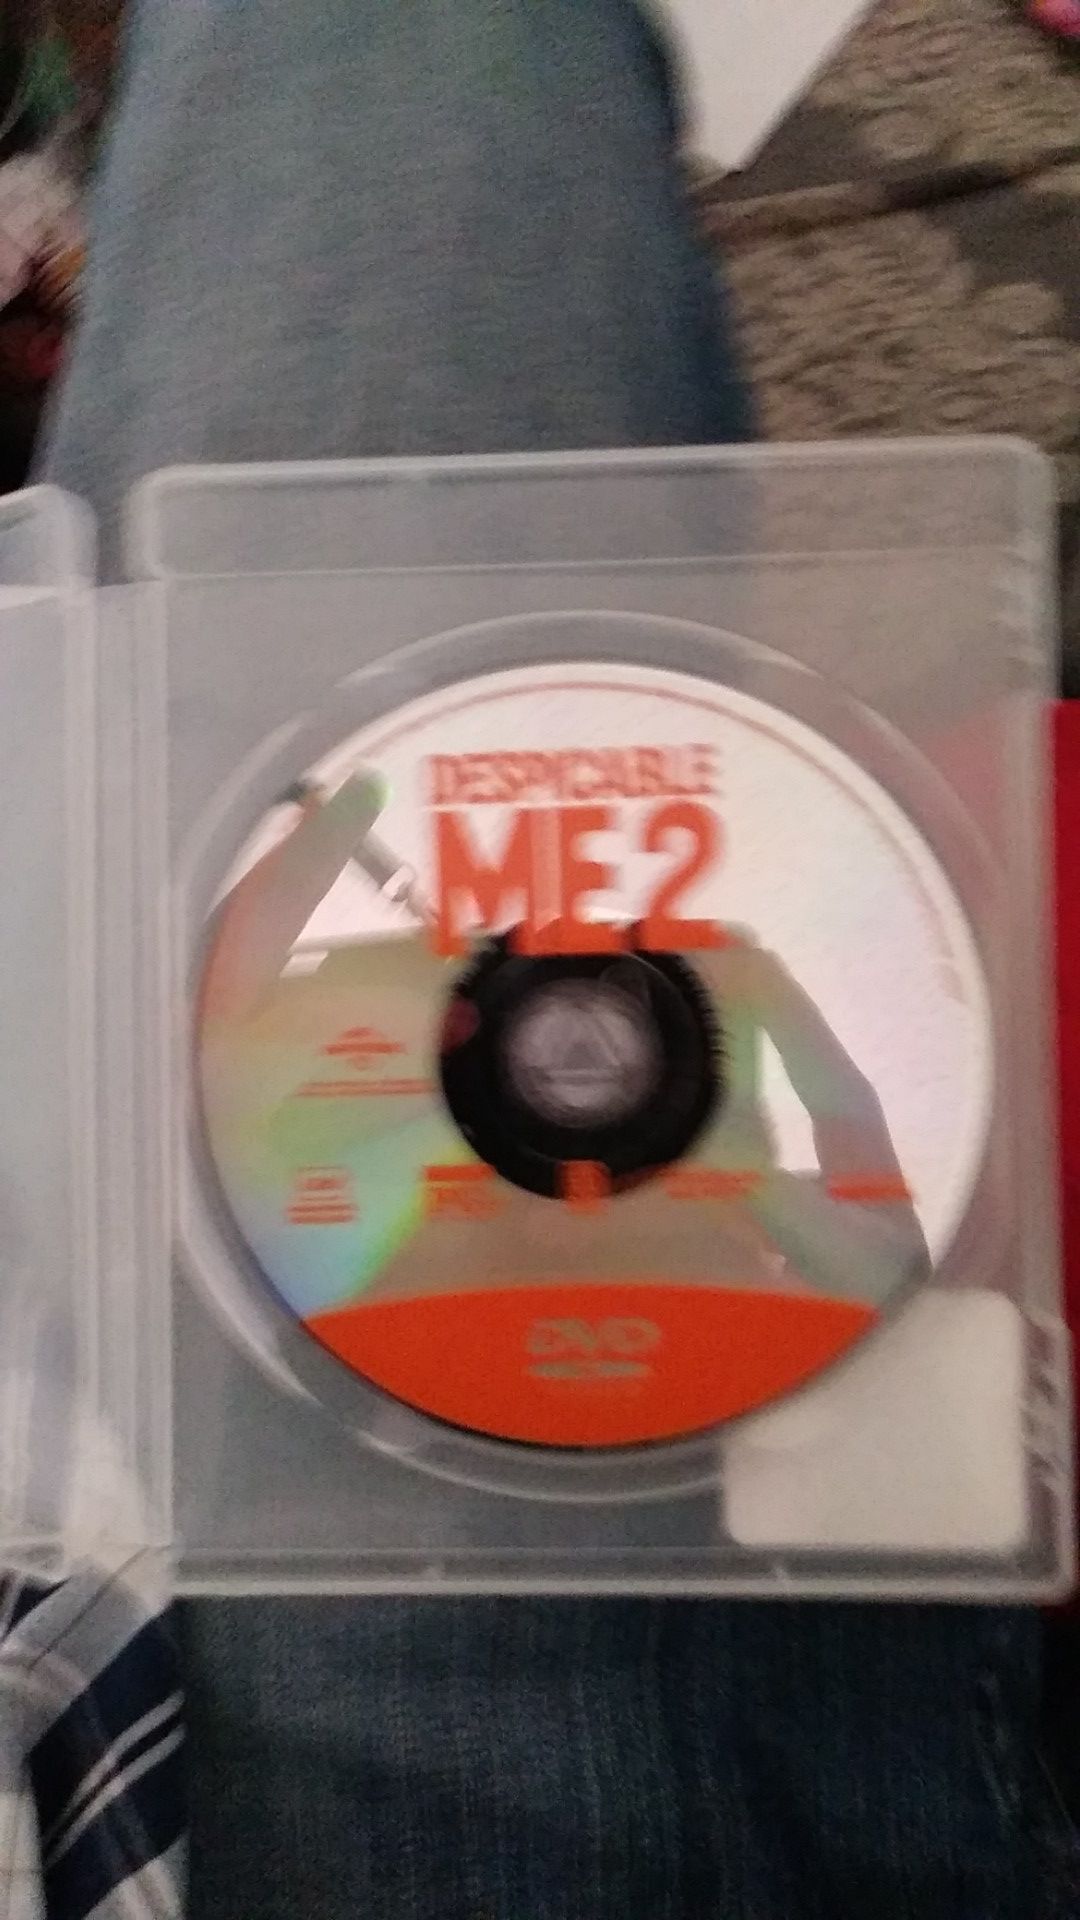 Despicable me 2 DVD